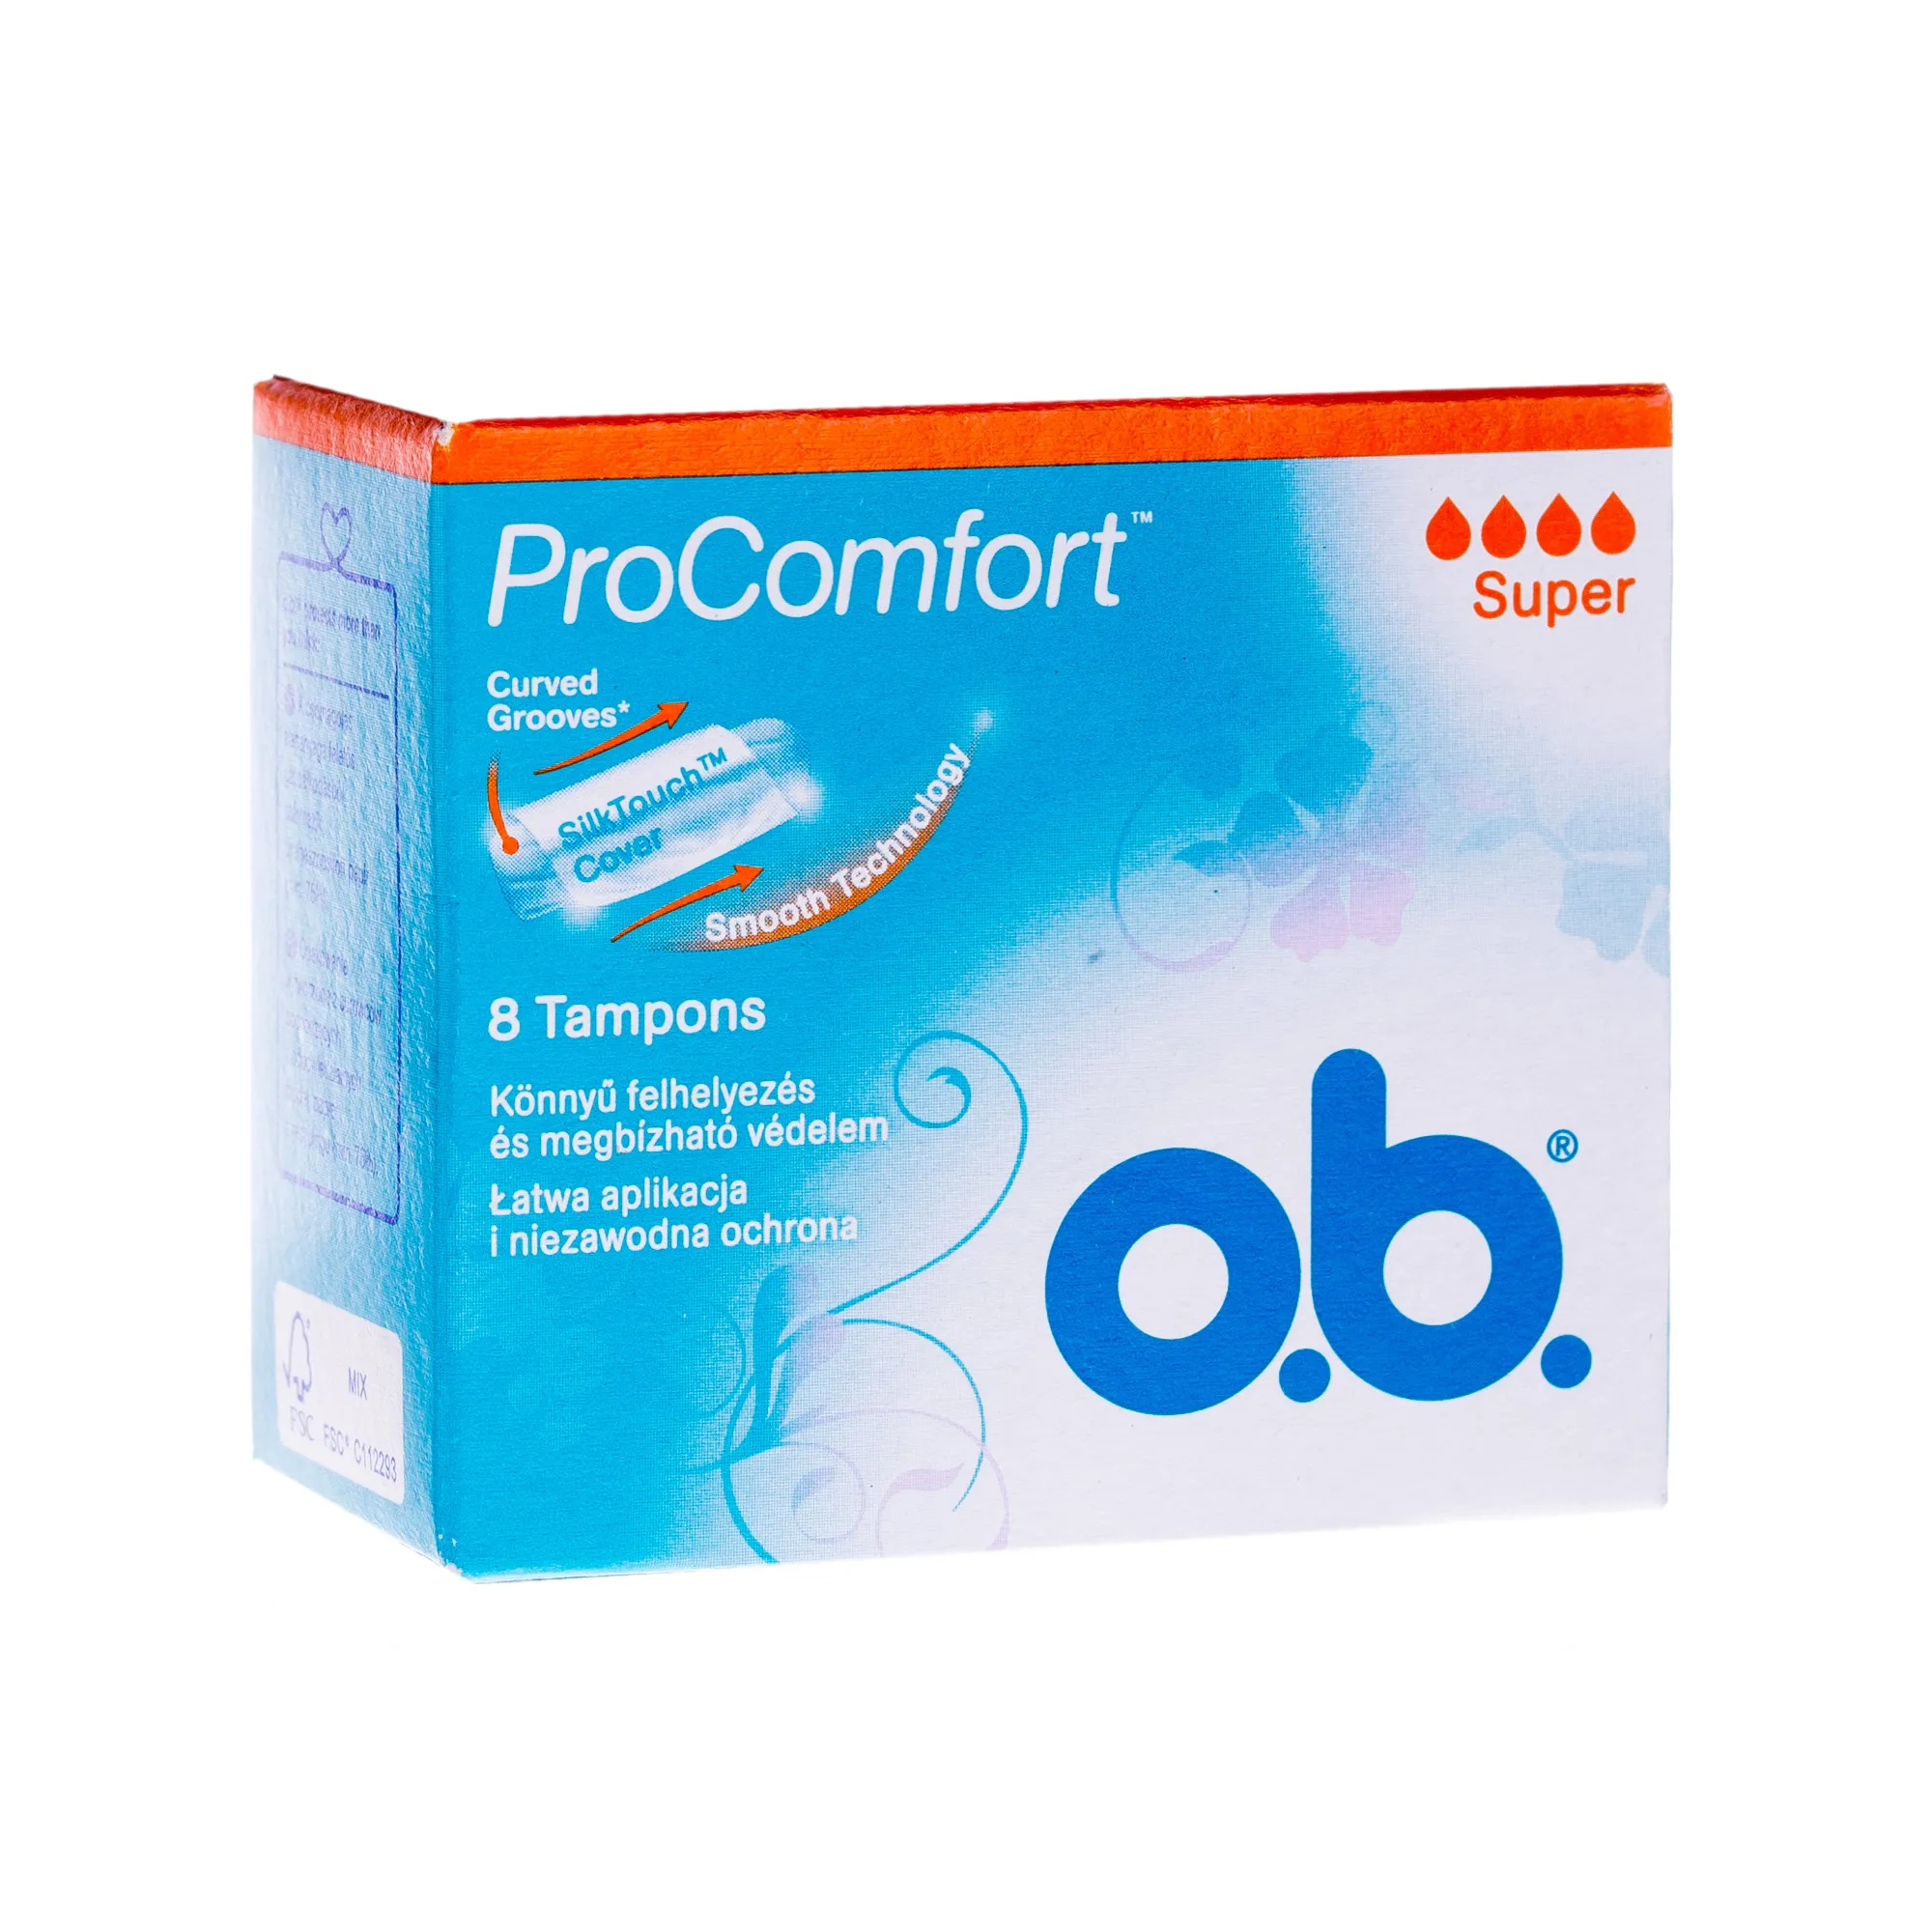 OB ProComfort Super, tampony higieniczne, 8 sztuk 